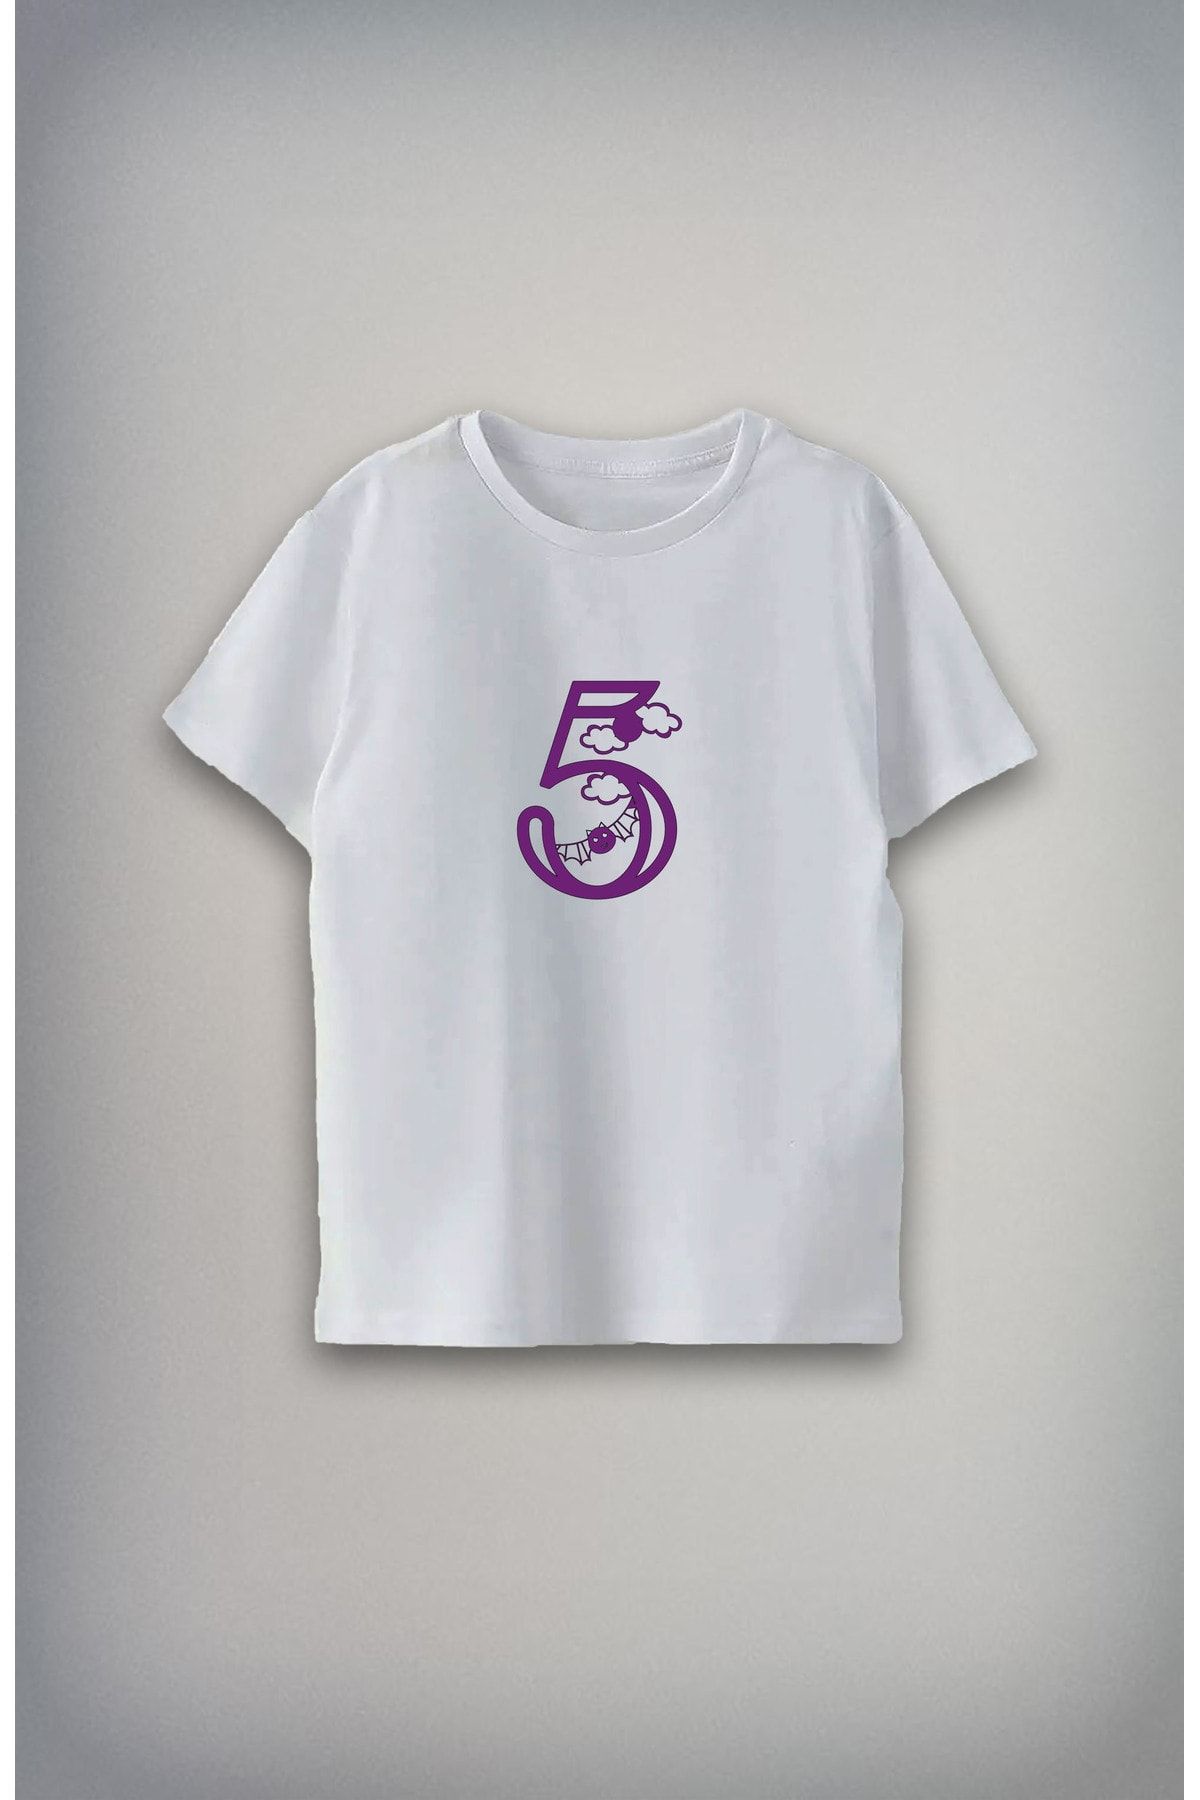 Darkia 5 YAŞ Özel Tasarım Baskılı Unisex Çocuk T-shirt Tişört